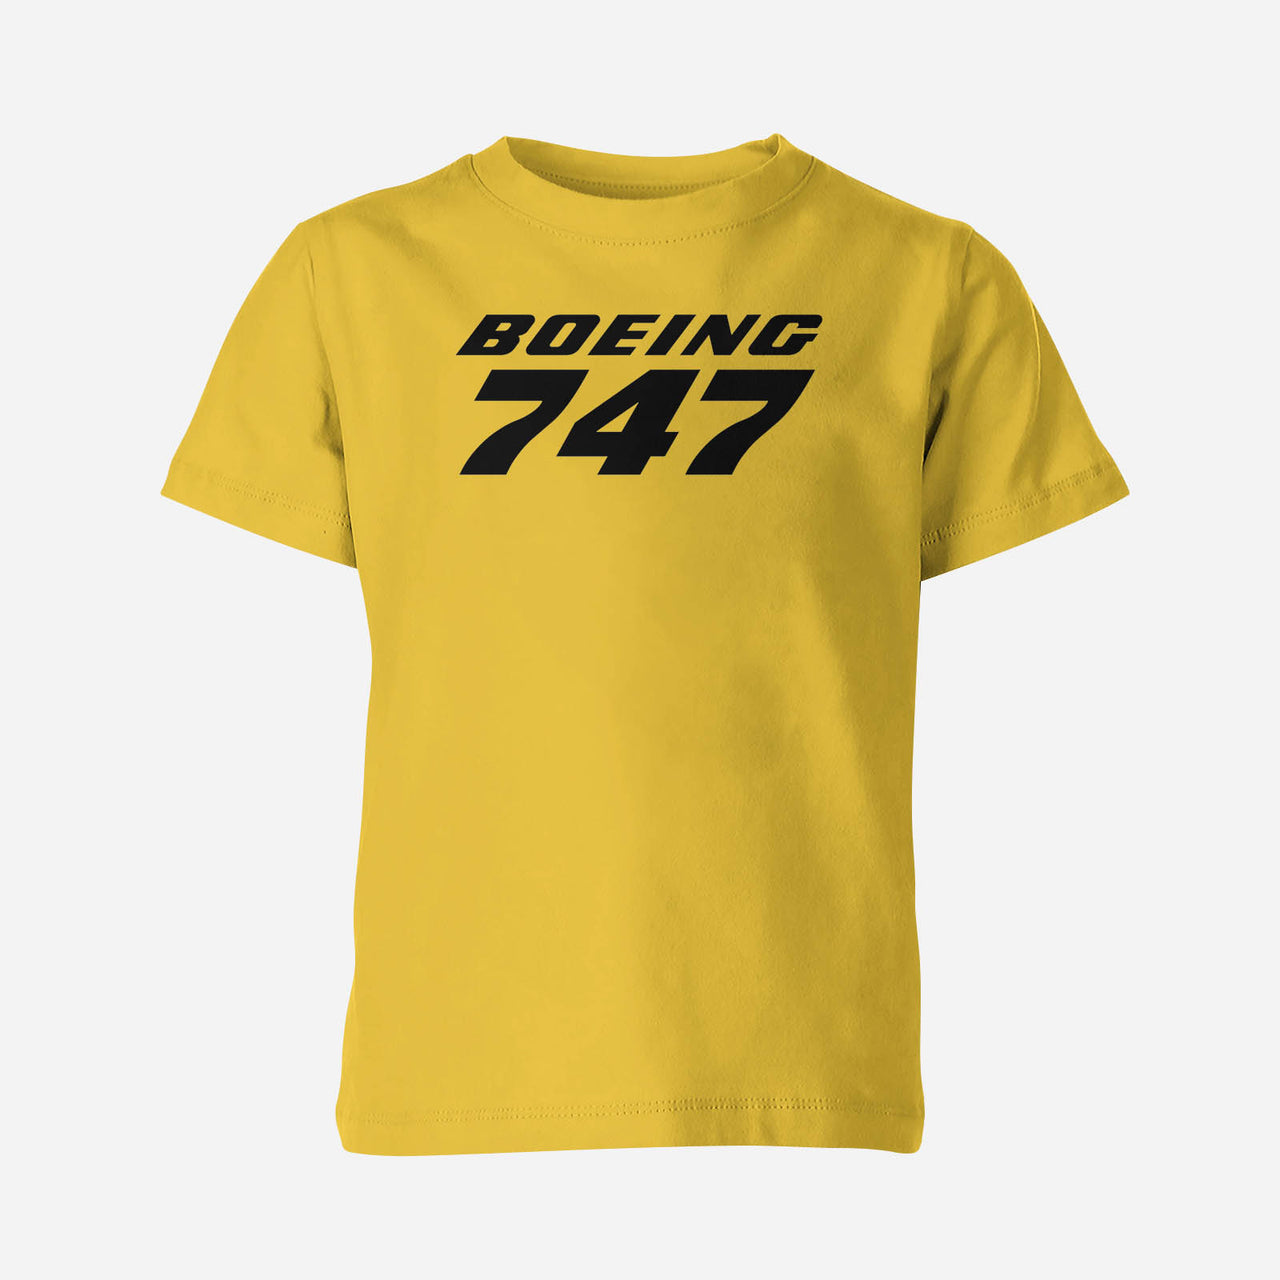 Boeing 747 & Text Designed Children T-Shirts